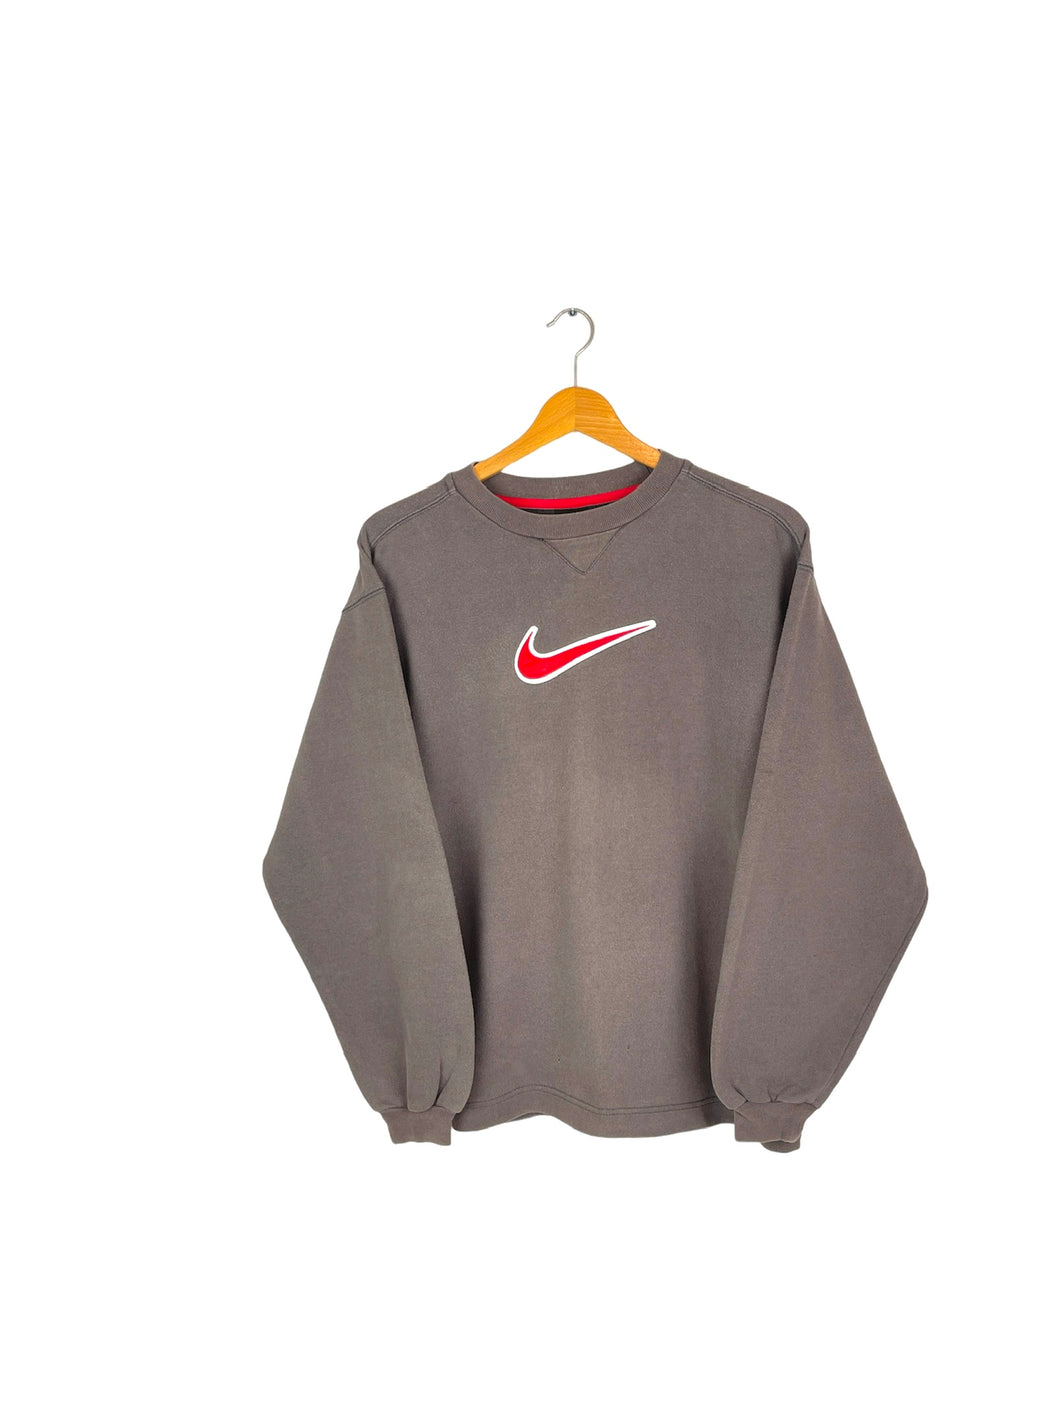 Nike Sweatshirt - Small